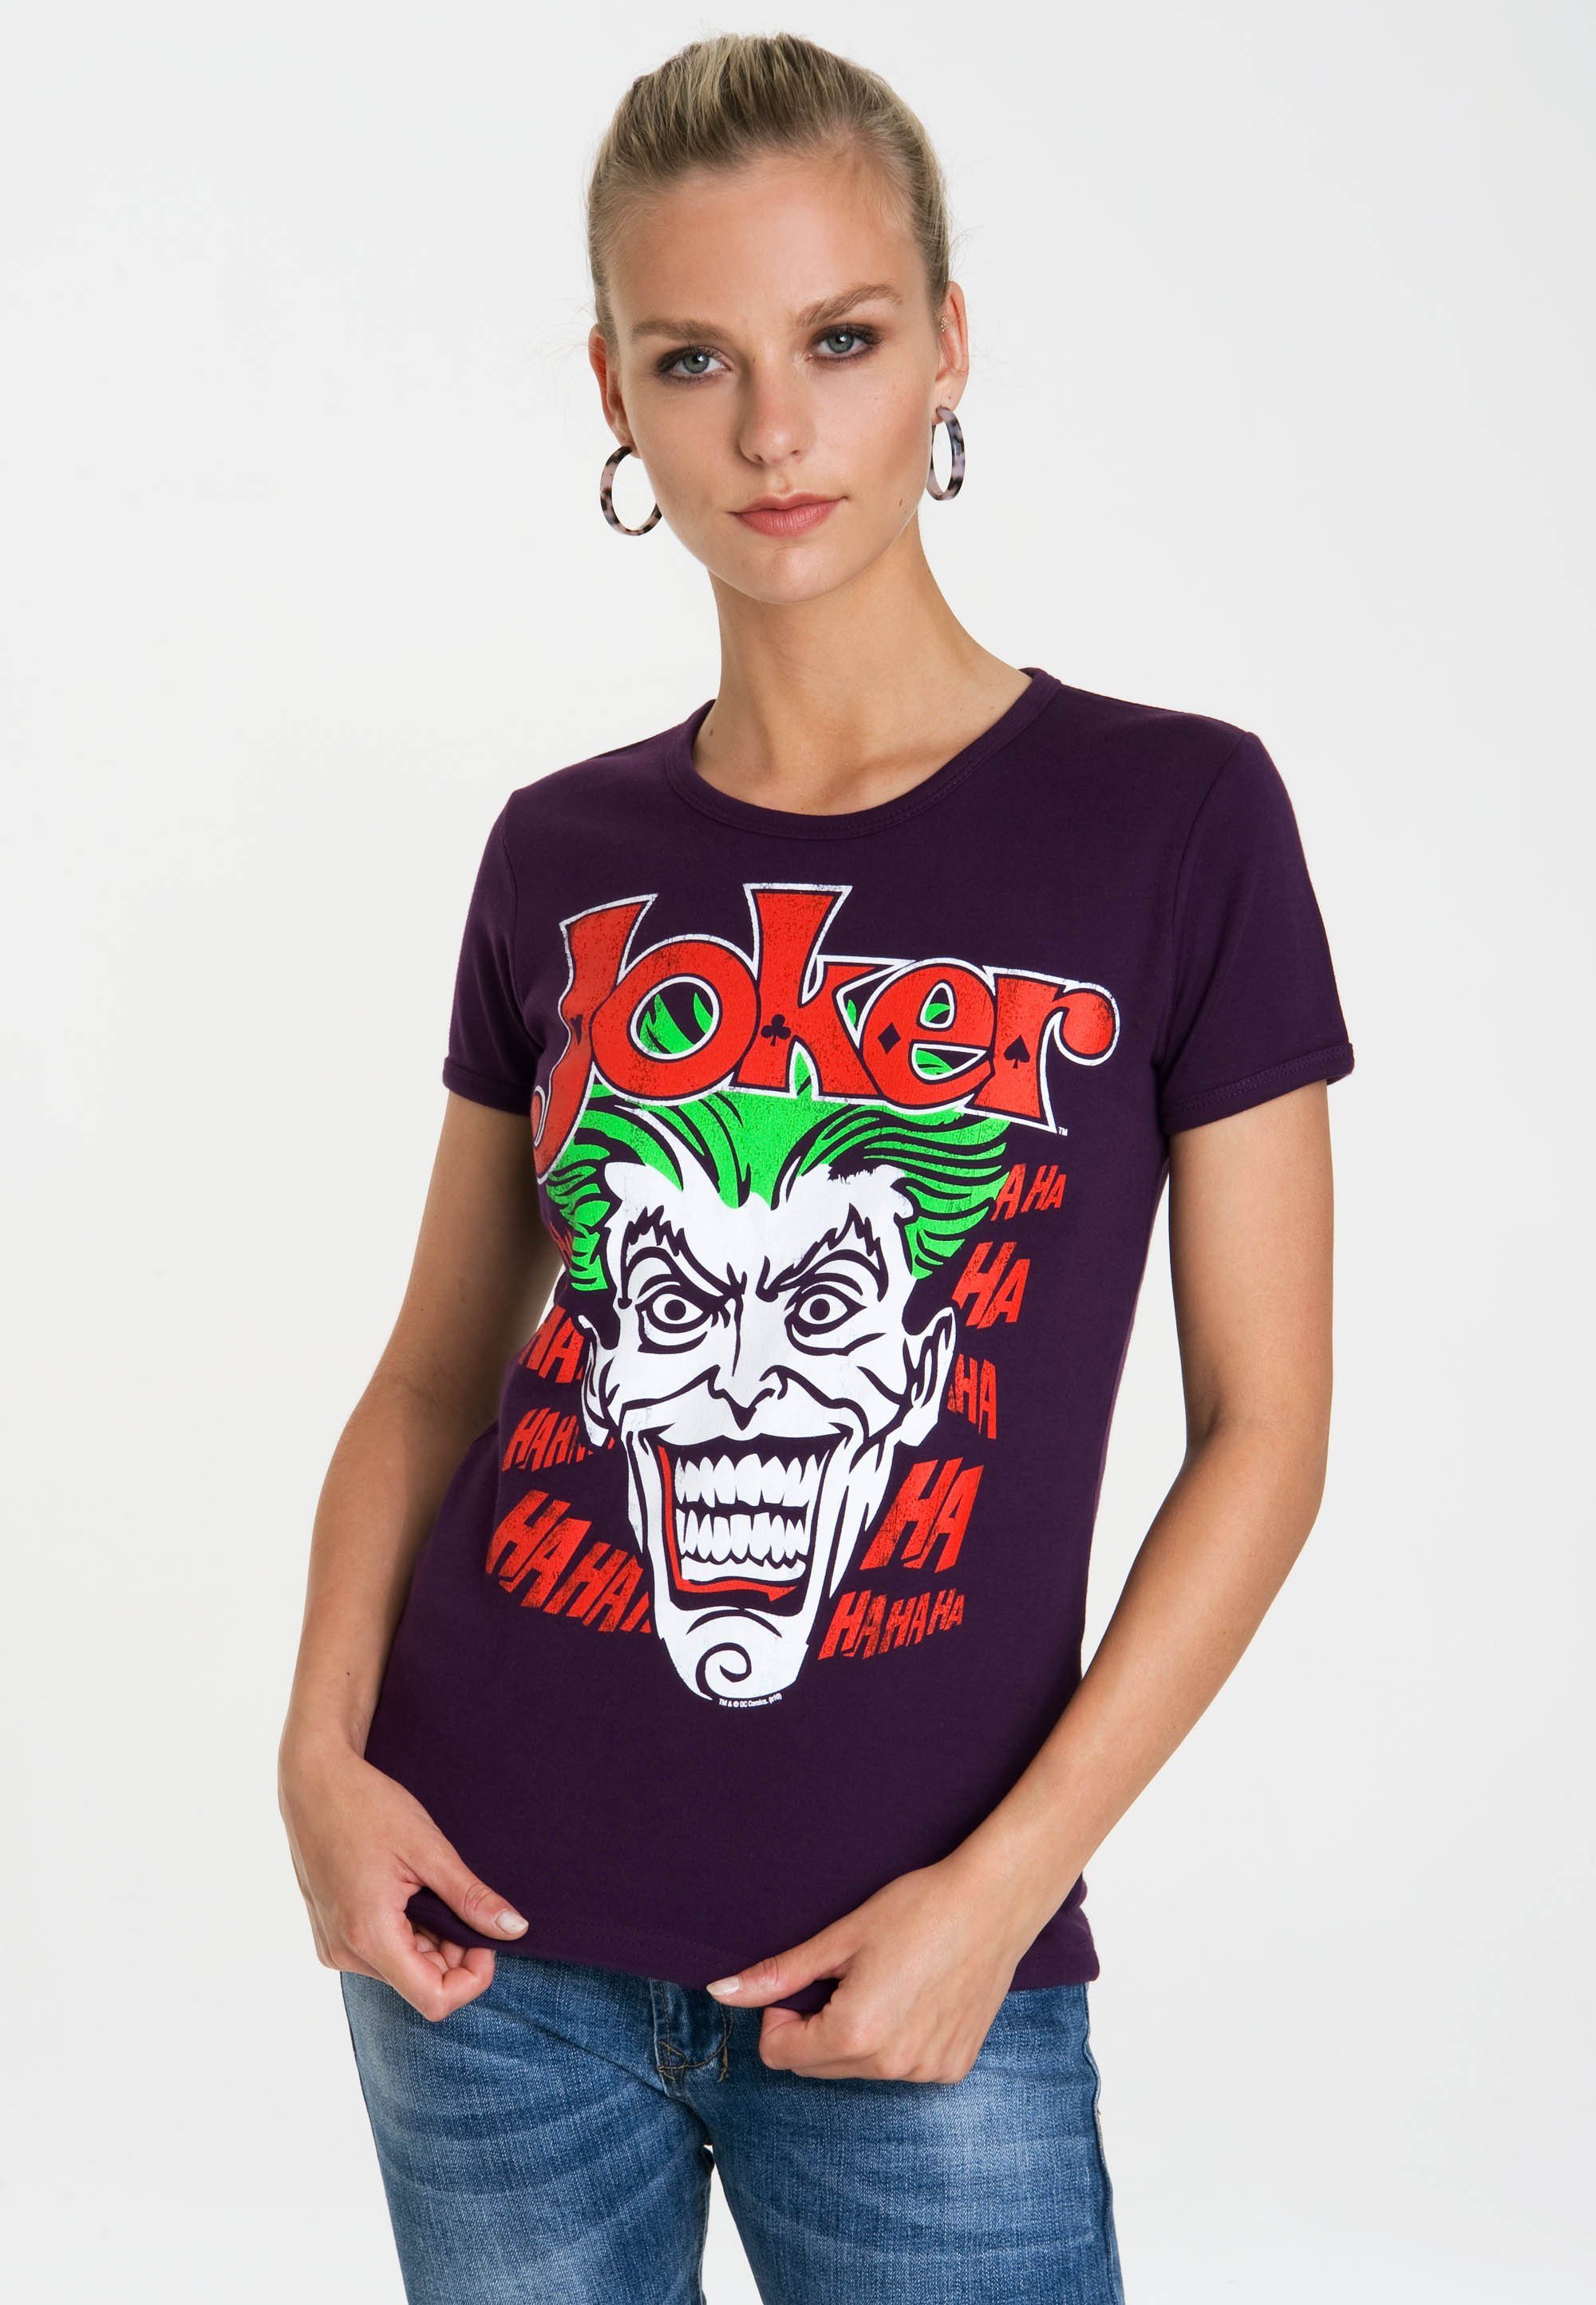 LOGOSHIRT T-Shirt Joker - Batman mit lizenziertem Originaldesign